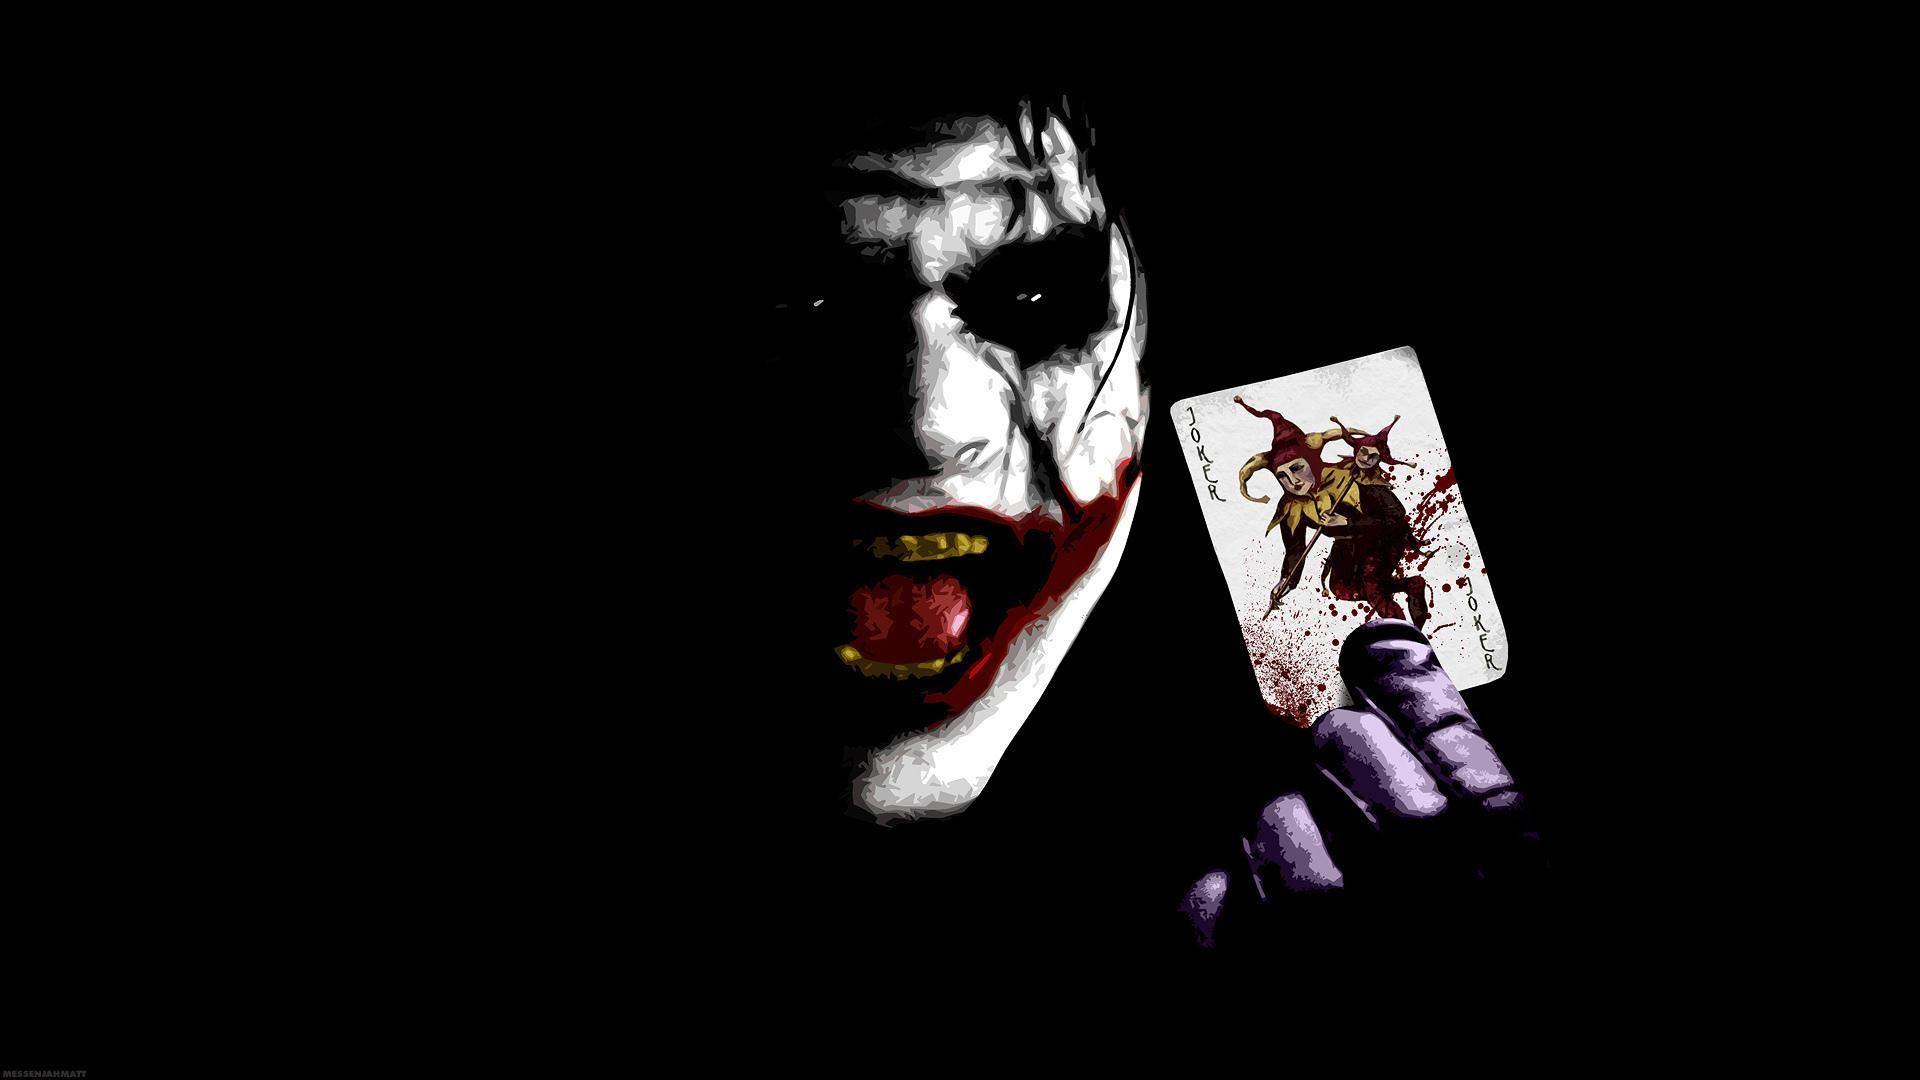 Joker Brand Logo Wallpaper